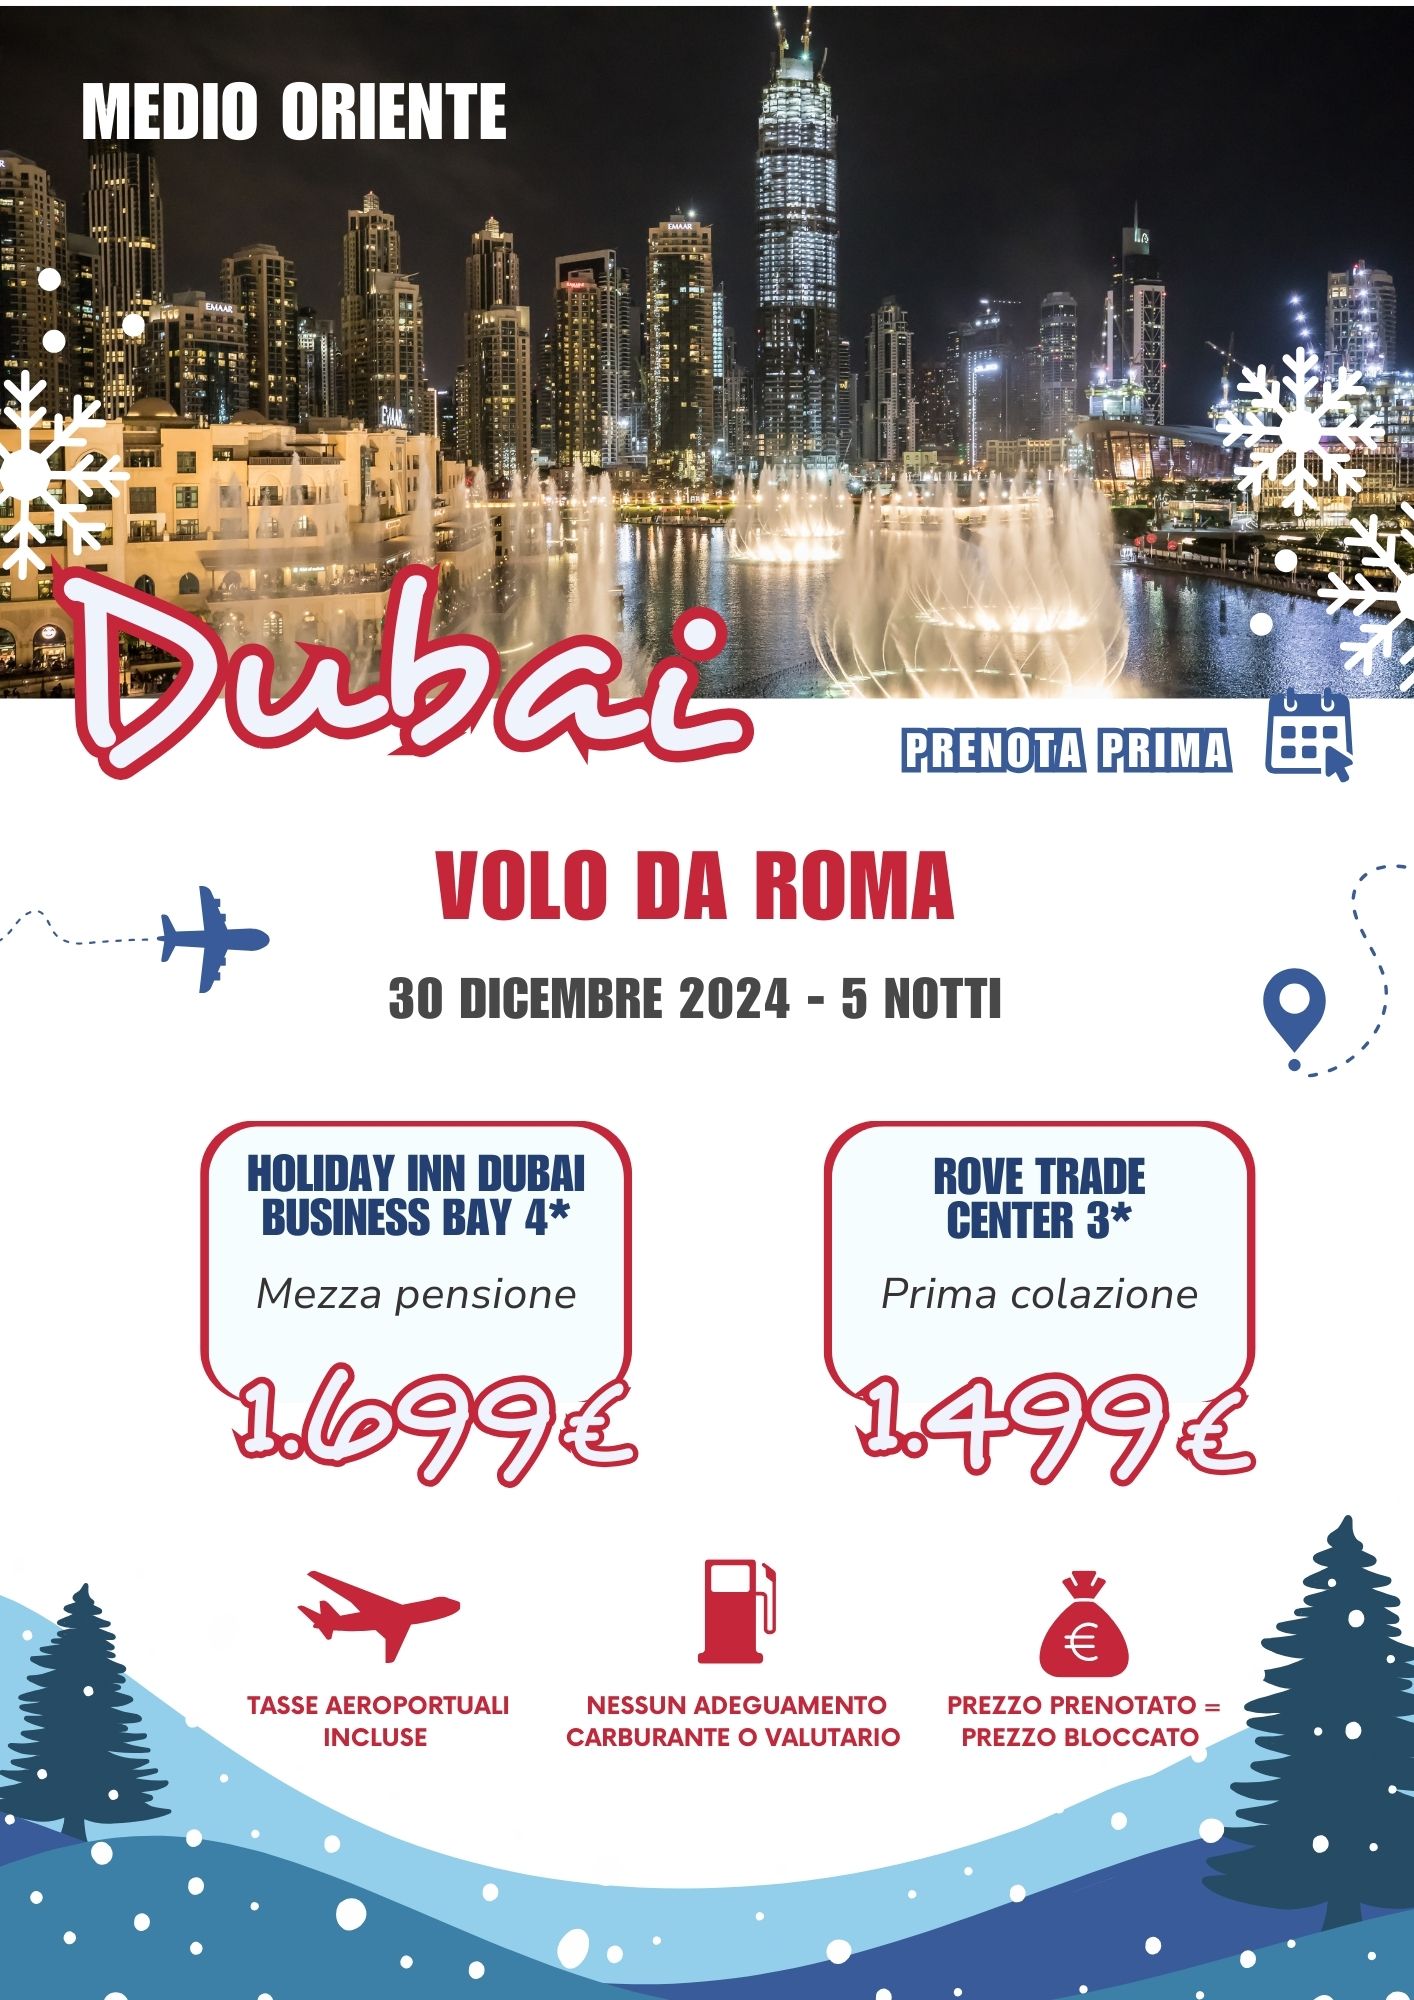 TEOREMA WINTER 2025 - DUBAI DA ROMA - 30 dicembre